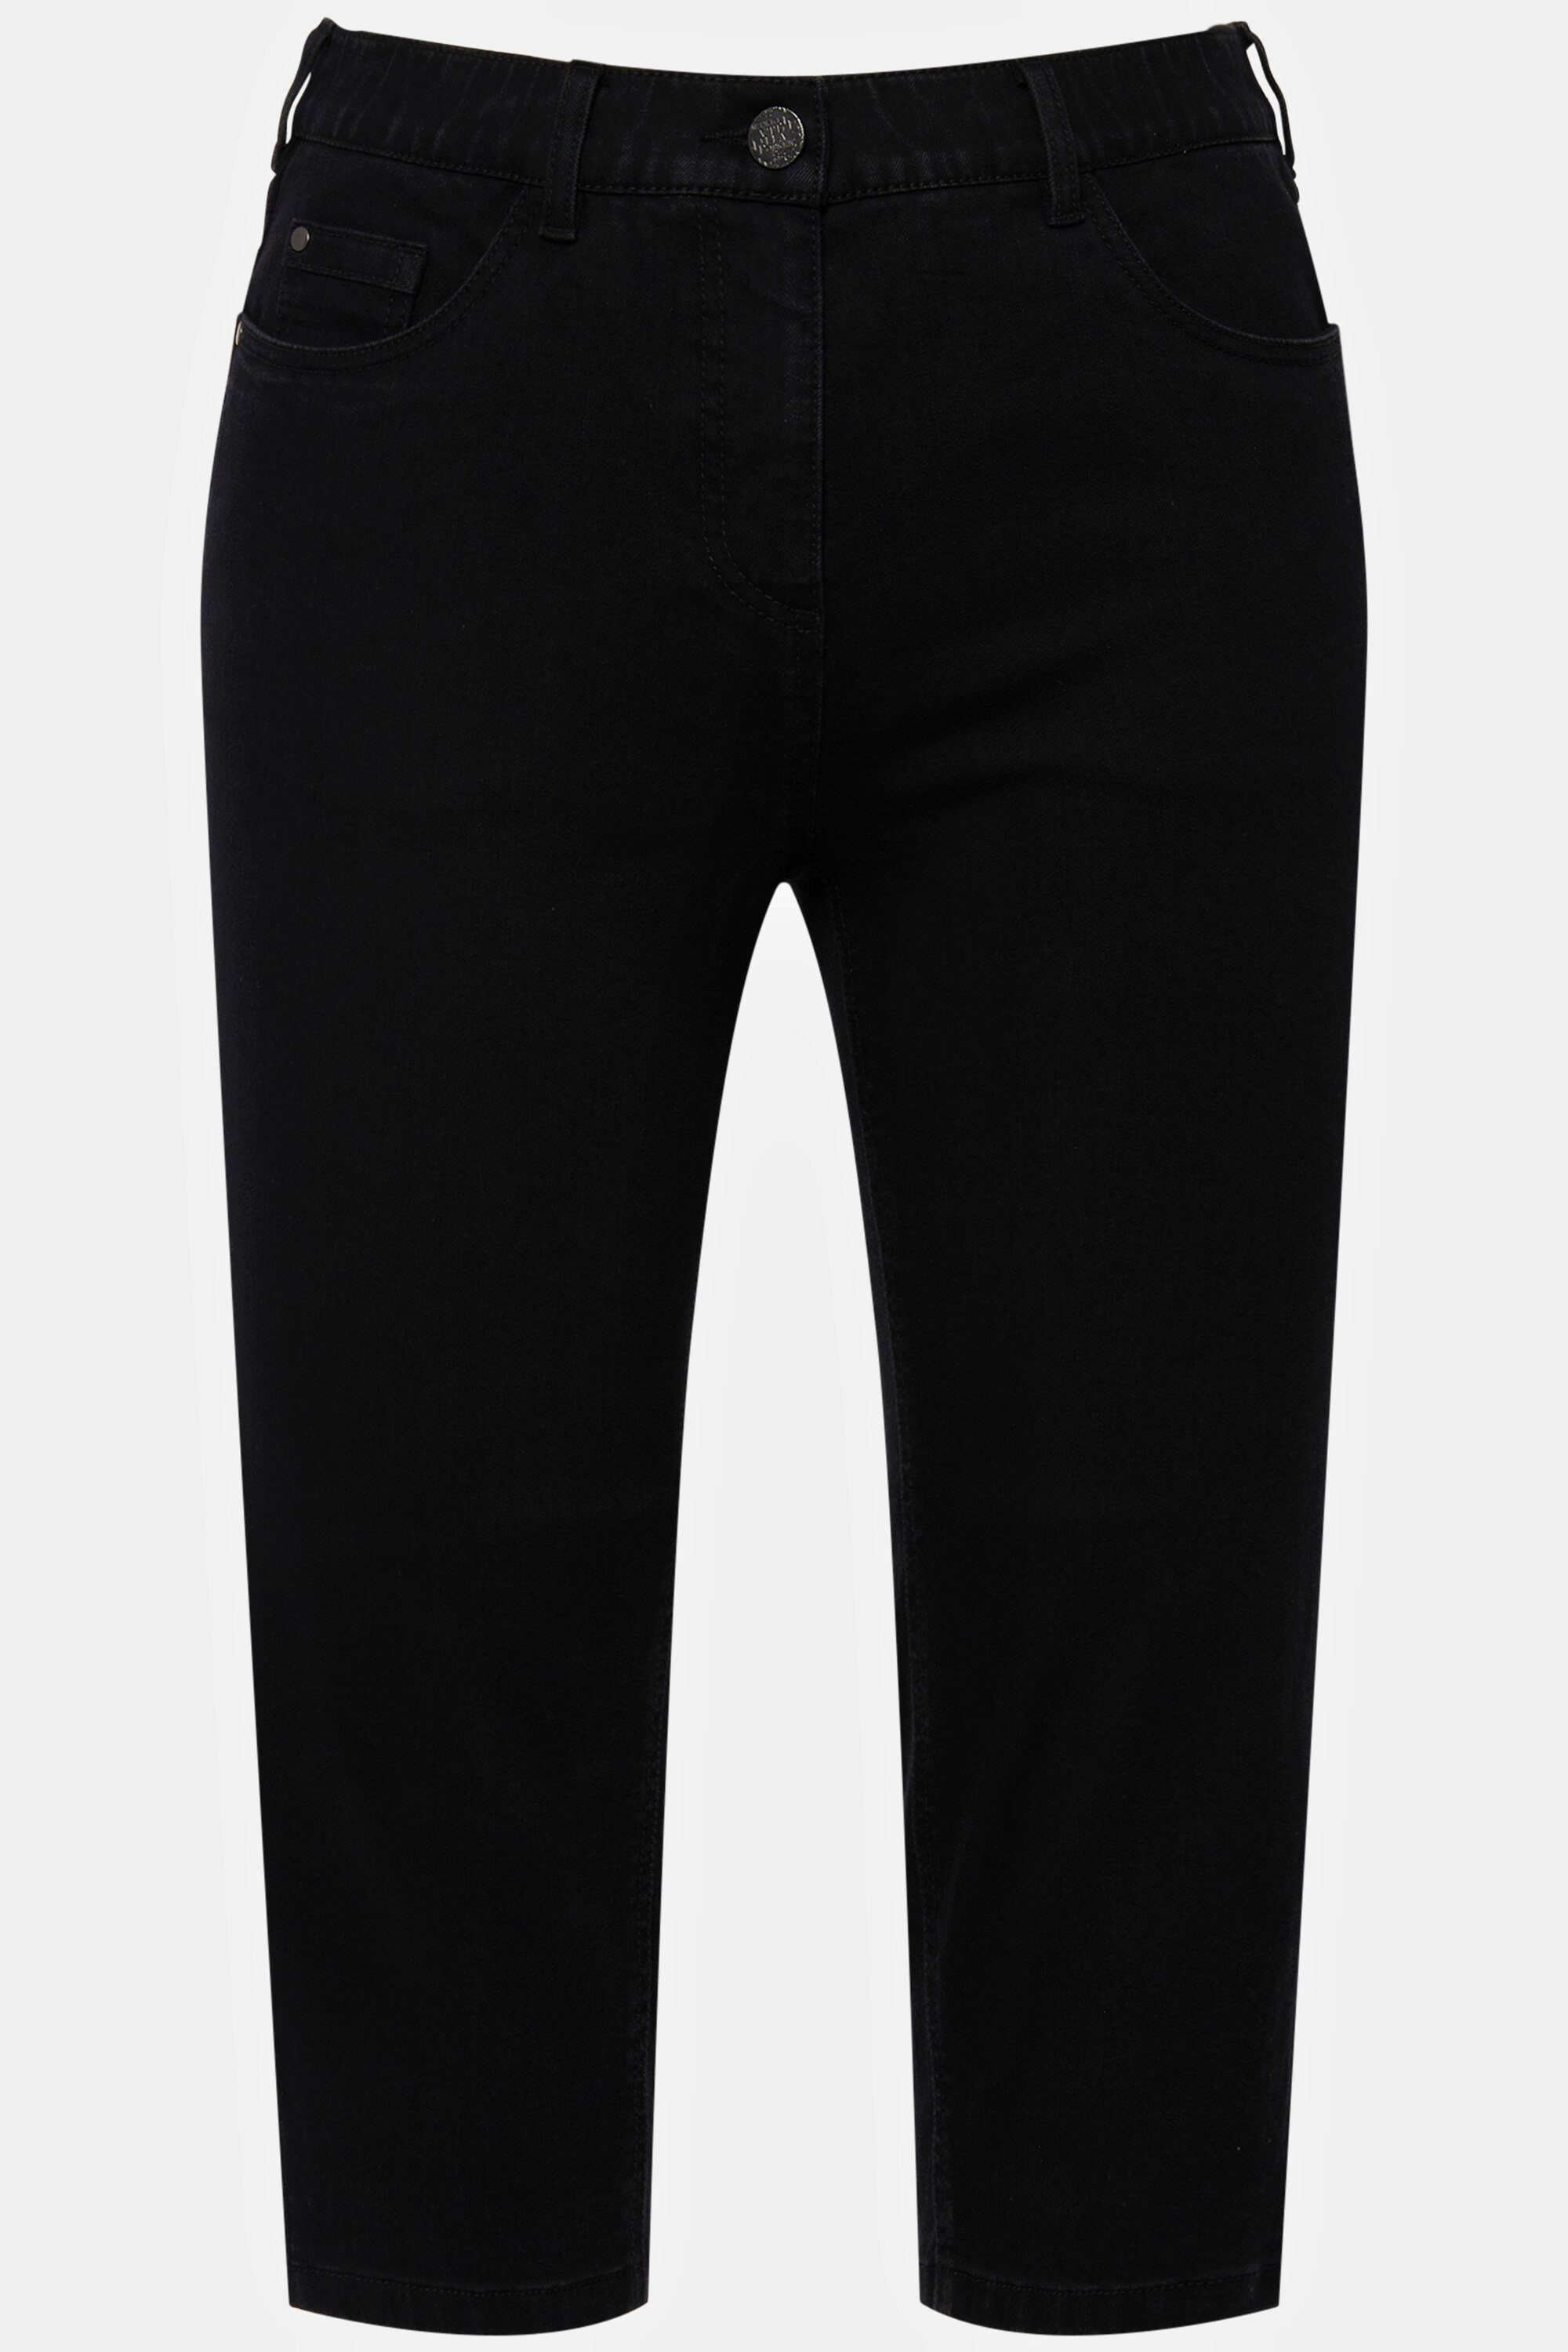 Ulla schmale Capri 5-Pocket-Form Popken Jeans Sarah Funktionshose schwarz